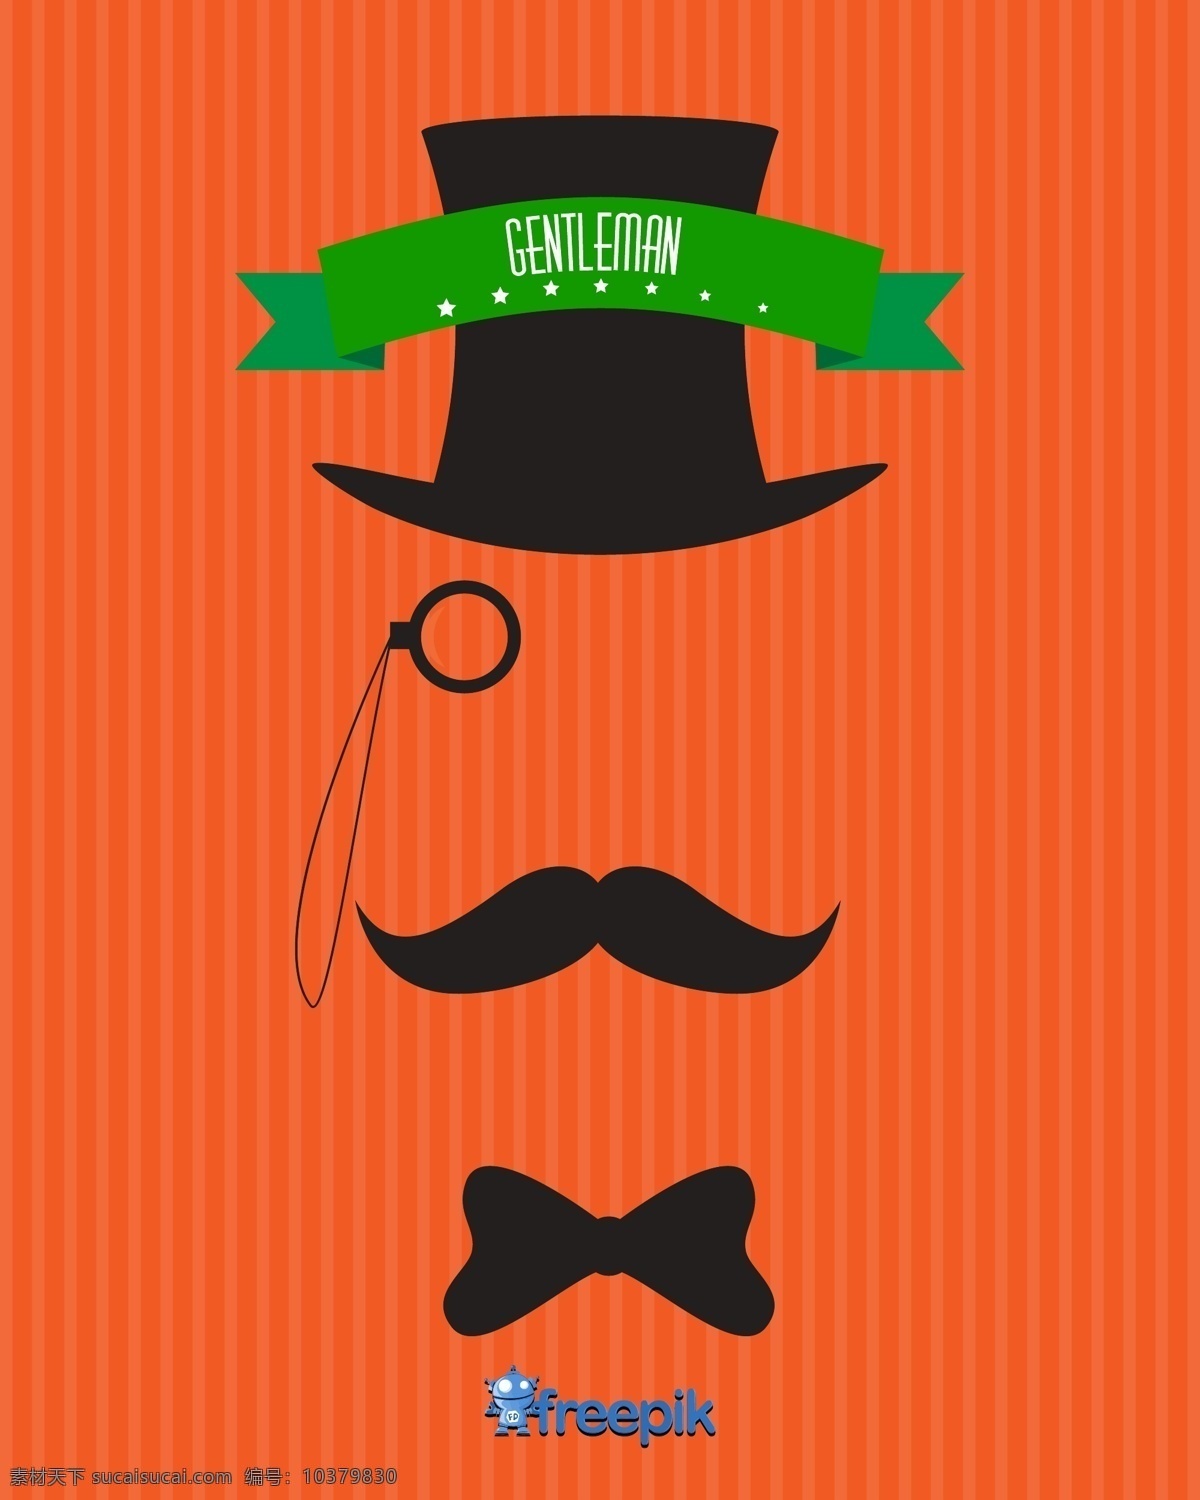 男士 隐形 复古 年份 海报 图标 时尚 男人 时髦 脸 眼镜 性格的人 帽子 口罩 衣服 胡子 胡子男人的头 橙色